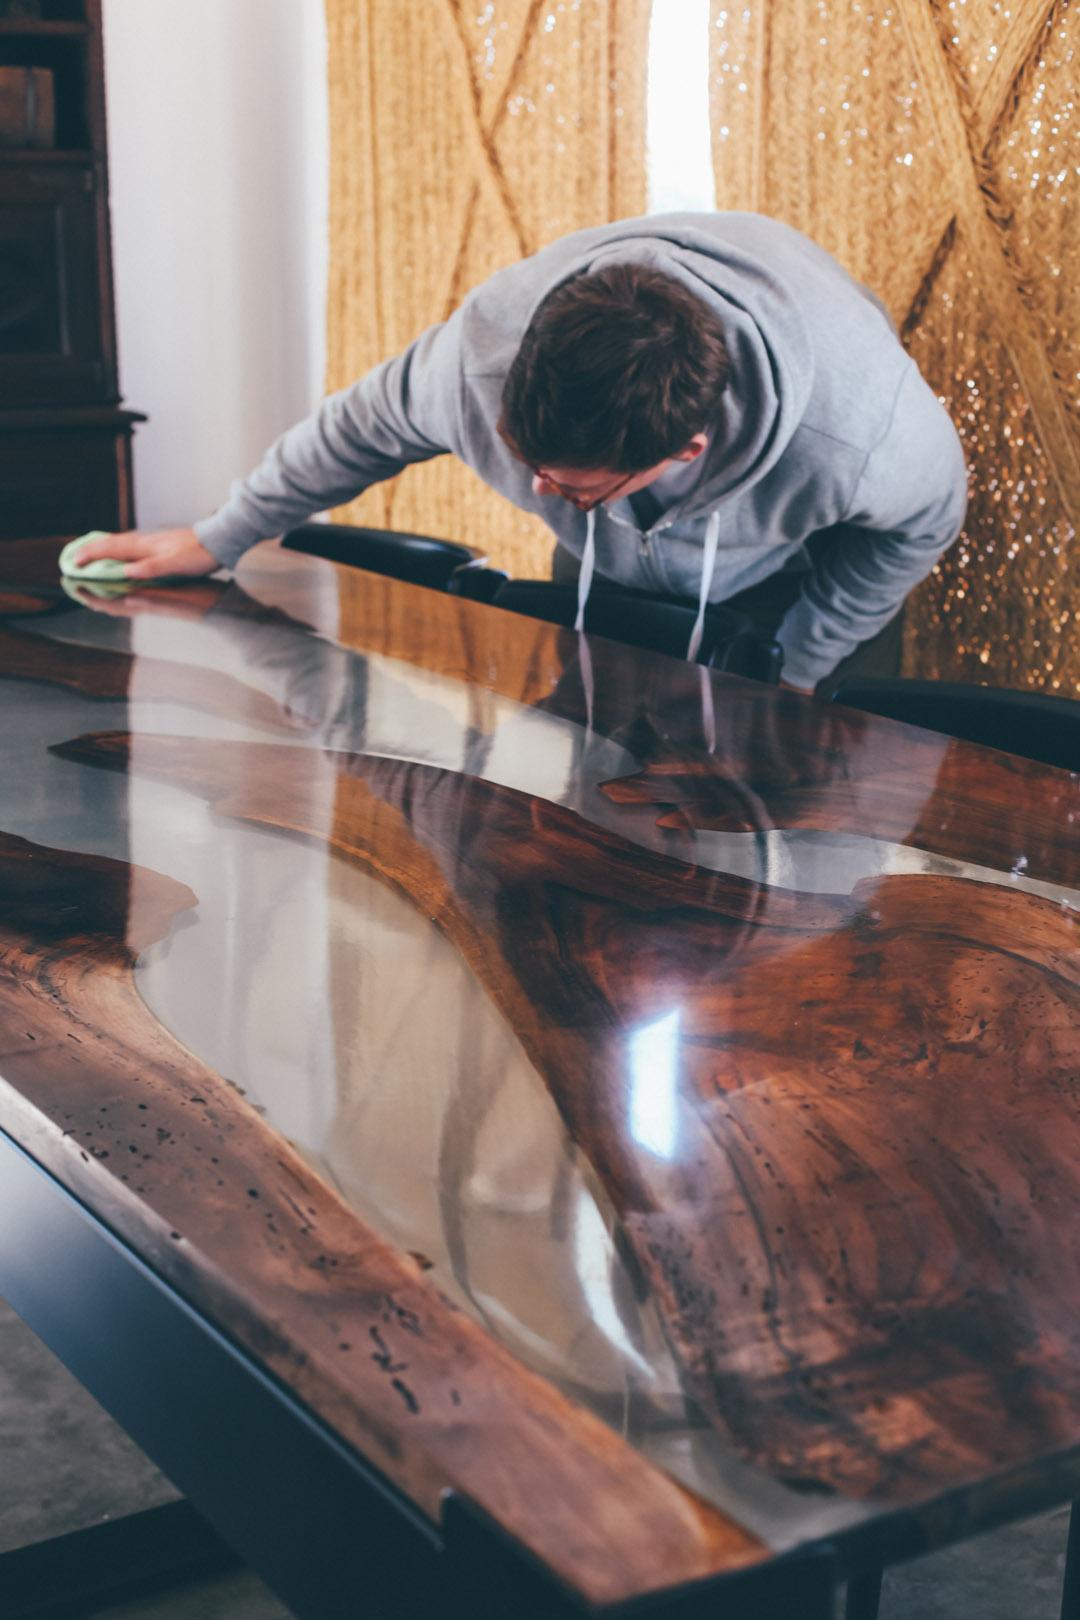 Wunderschöne Verbindung zwischen der wahren Natur und Form der Nussbaumplatten mit dem festen und transparenten Epoxidharz.
Geschwärzte Eisenbeine, die dem Tisch Struktur verleihen und die Farben und Formen der Tischplatte hervorheben. 
Dieser